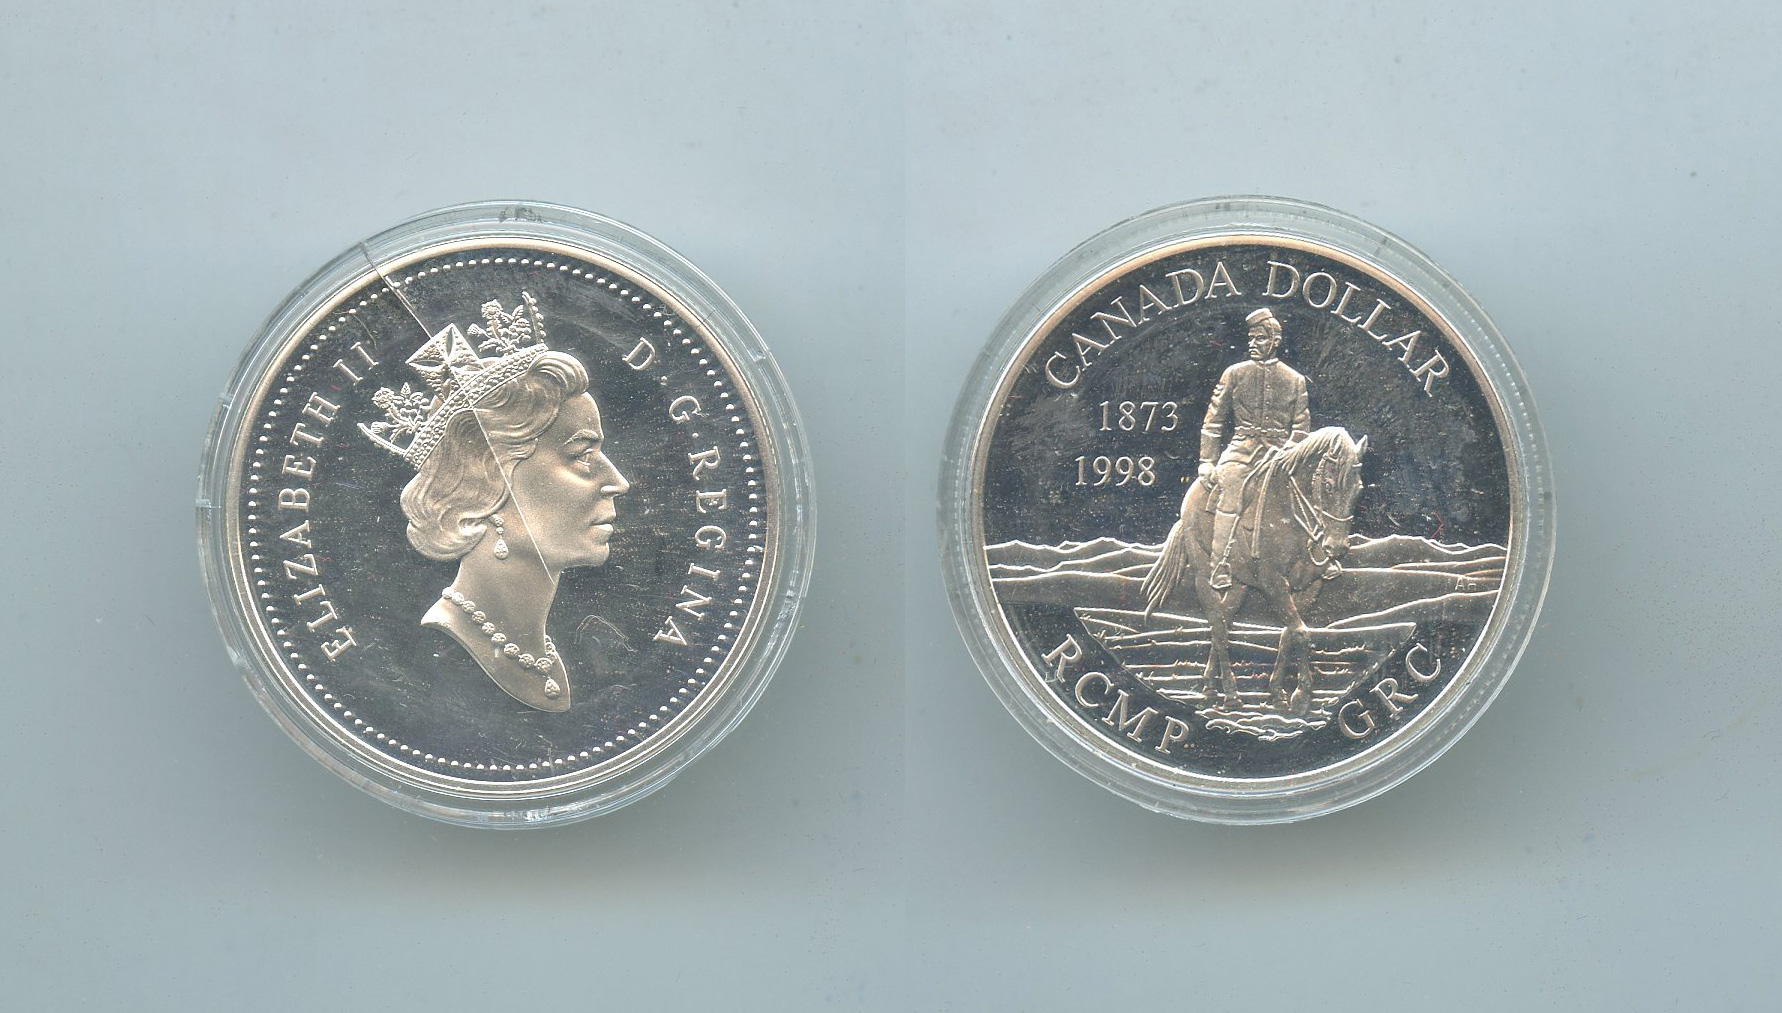 CANADA, Elizabeth II, Dollar 1998 "120Â° Royal Canadian Mounted Police"